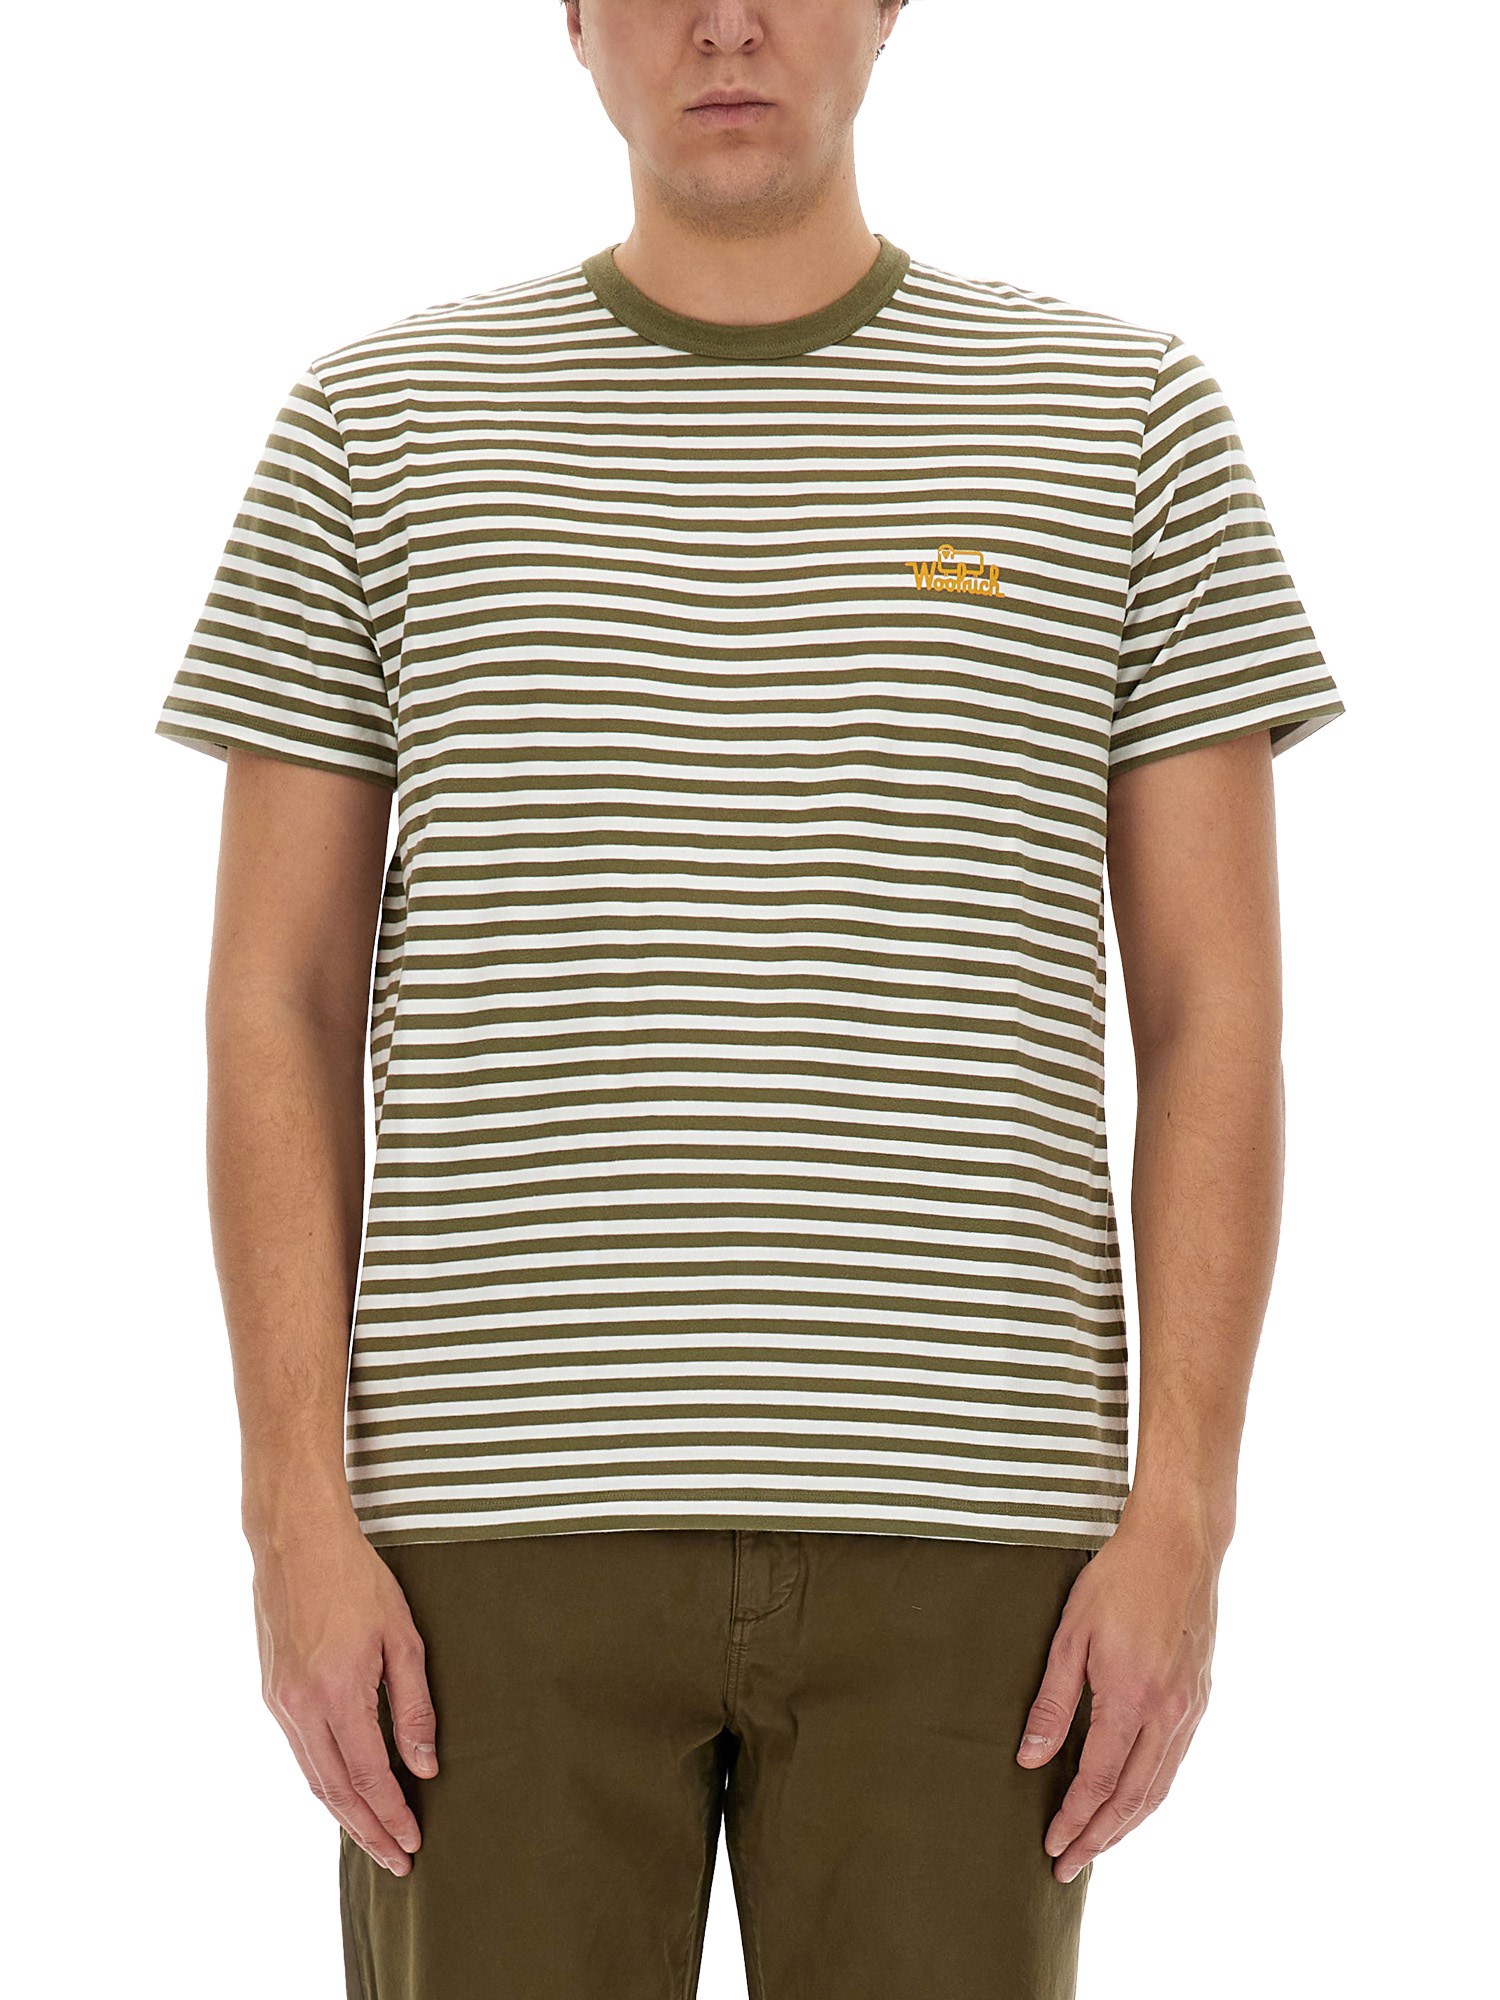 woolrich striped t-shirt